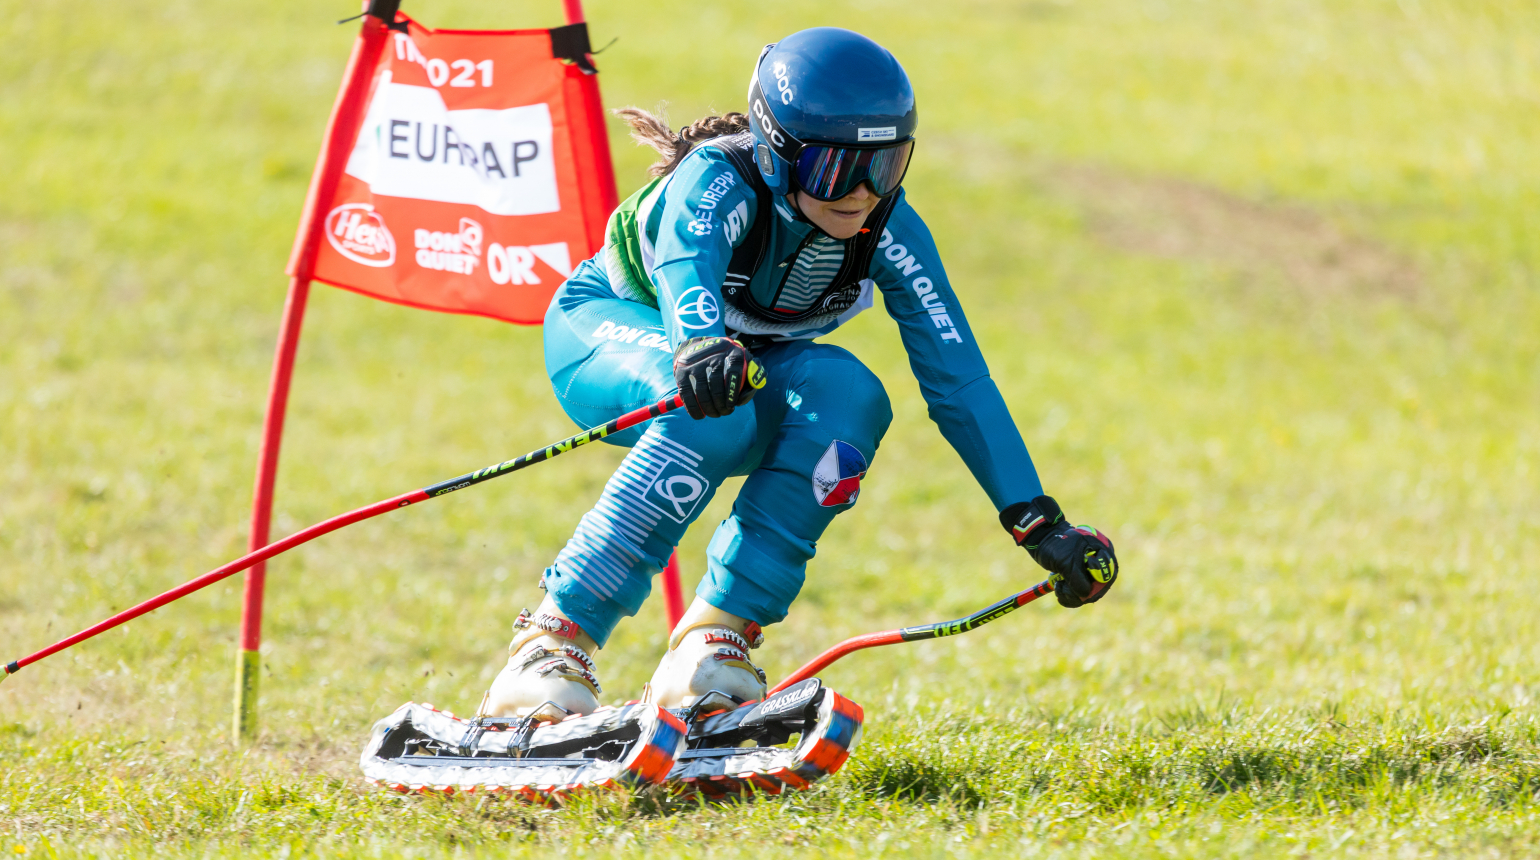 Travní lyžaři se představí na Slovensku. O víkendu odstartuje také první letošní zastávka Grasski Open Cupu